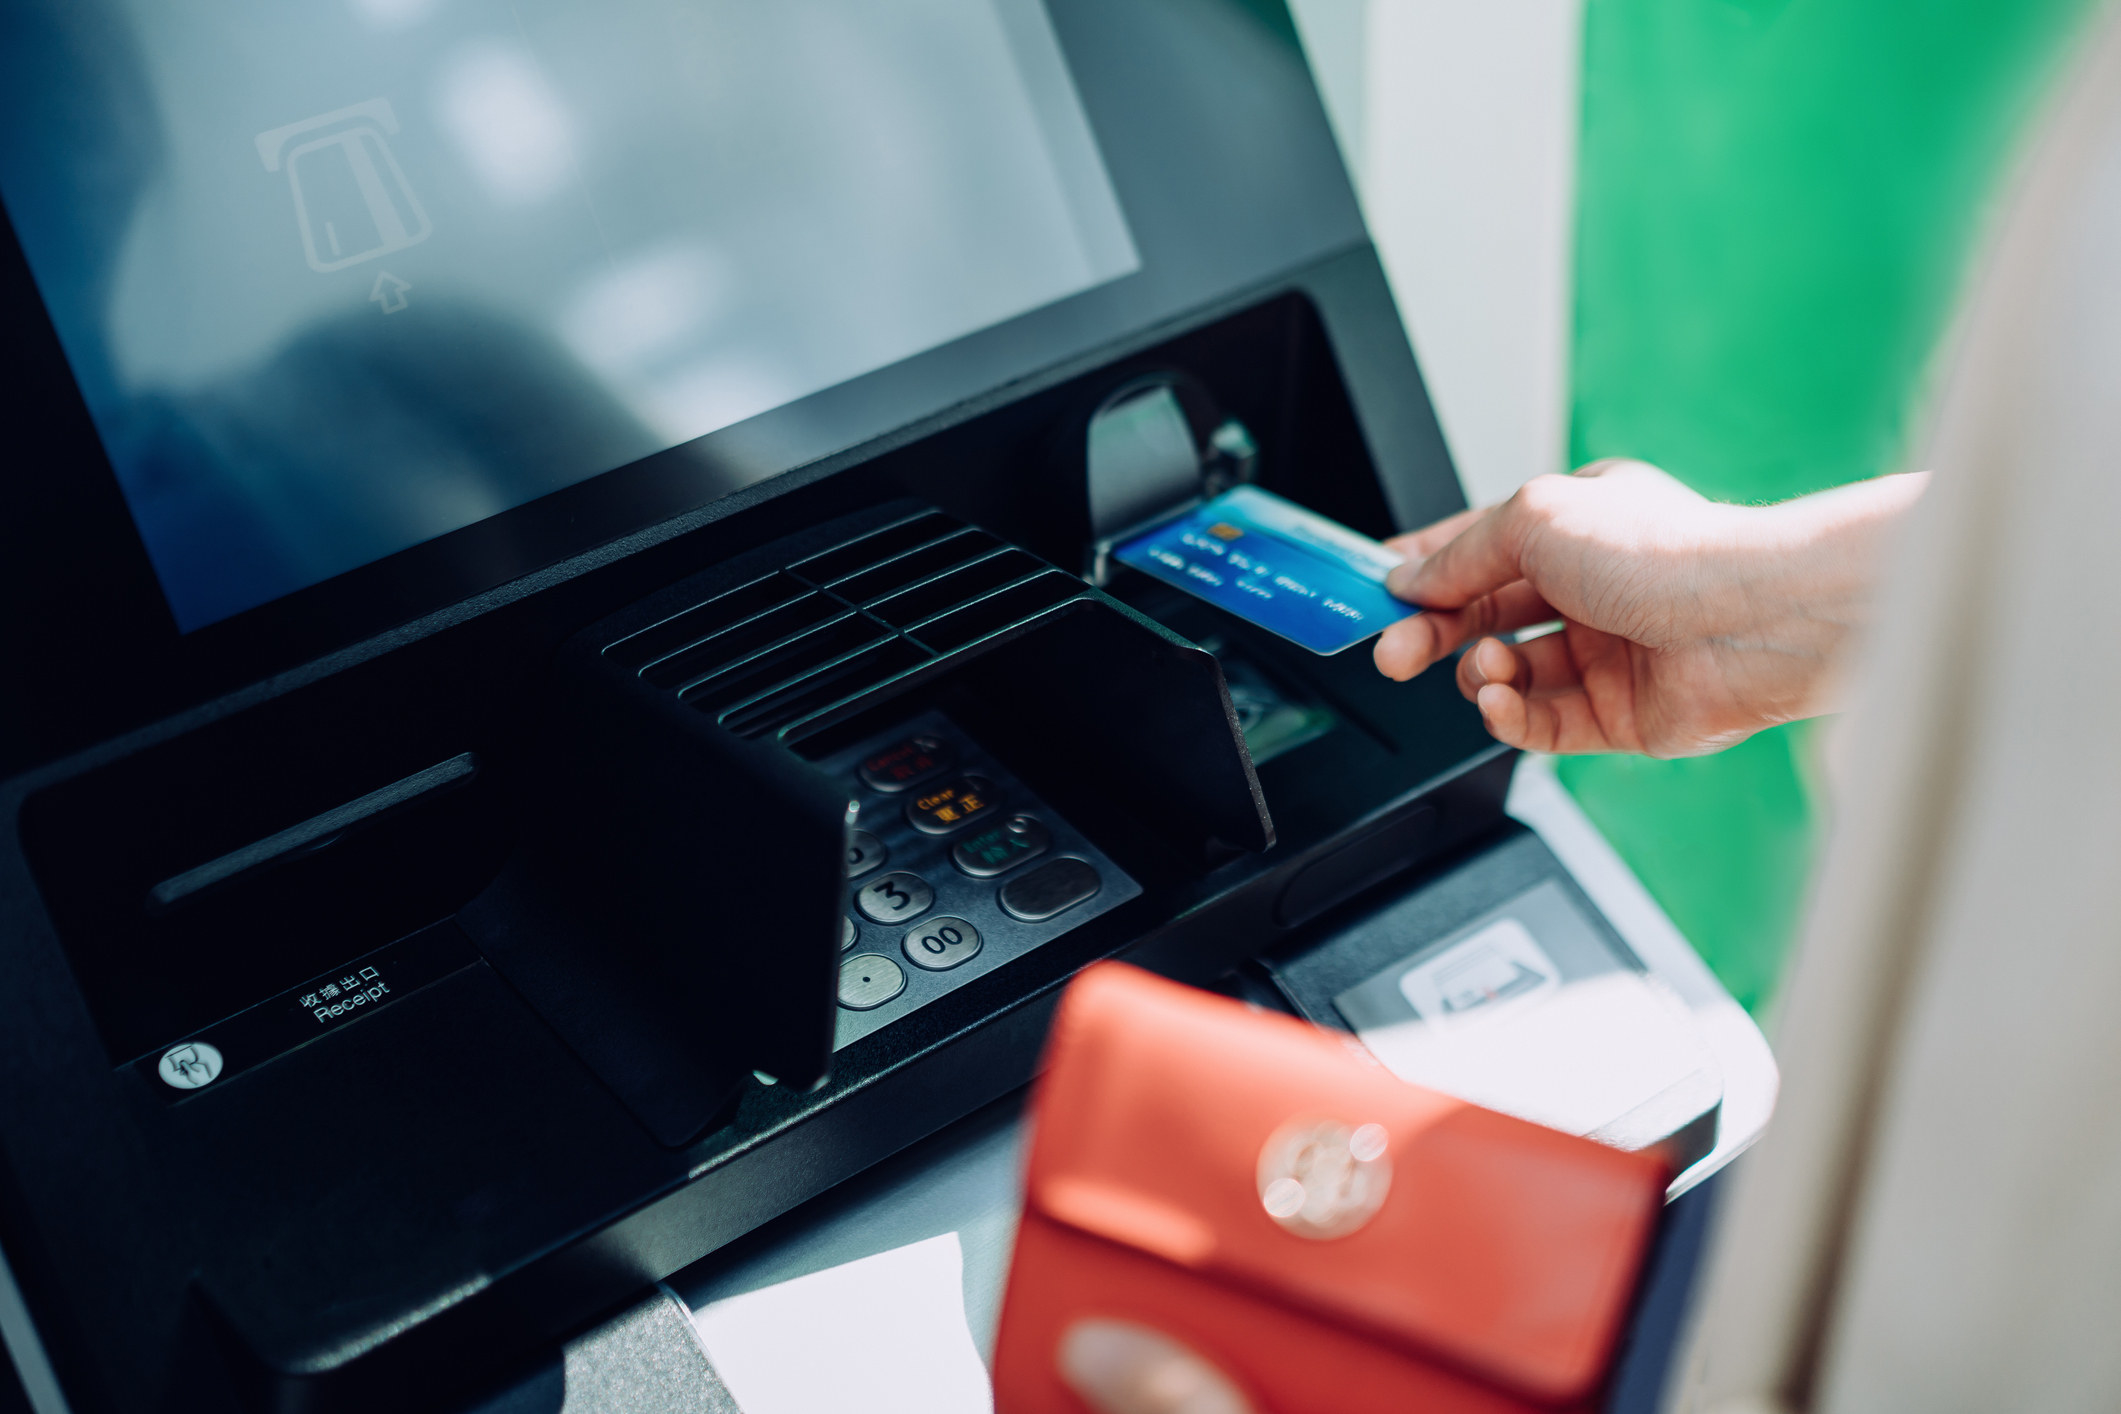 A person putting their card in an ATM machine